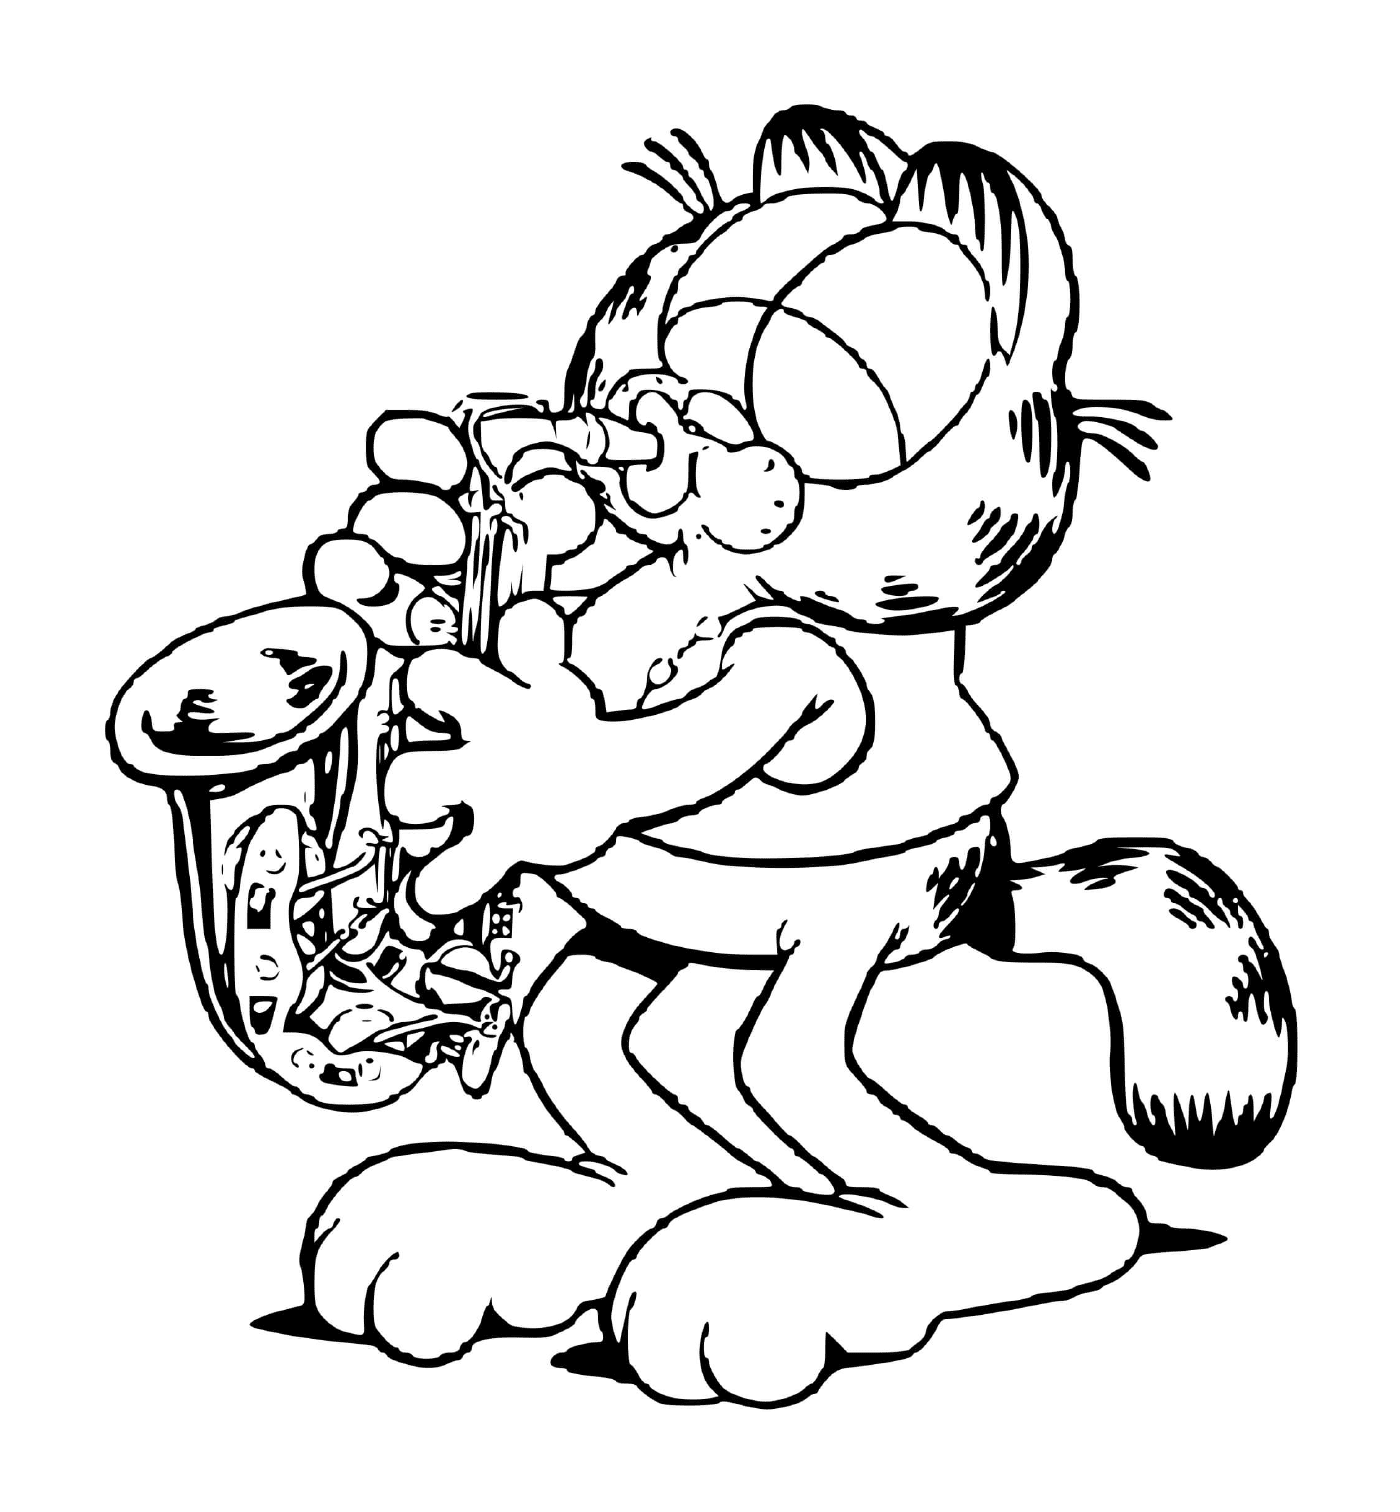  Garfield spielt das Saxophon 